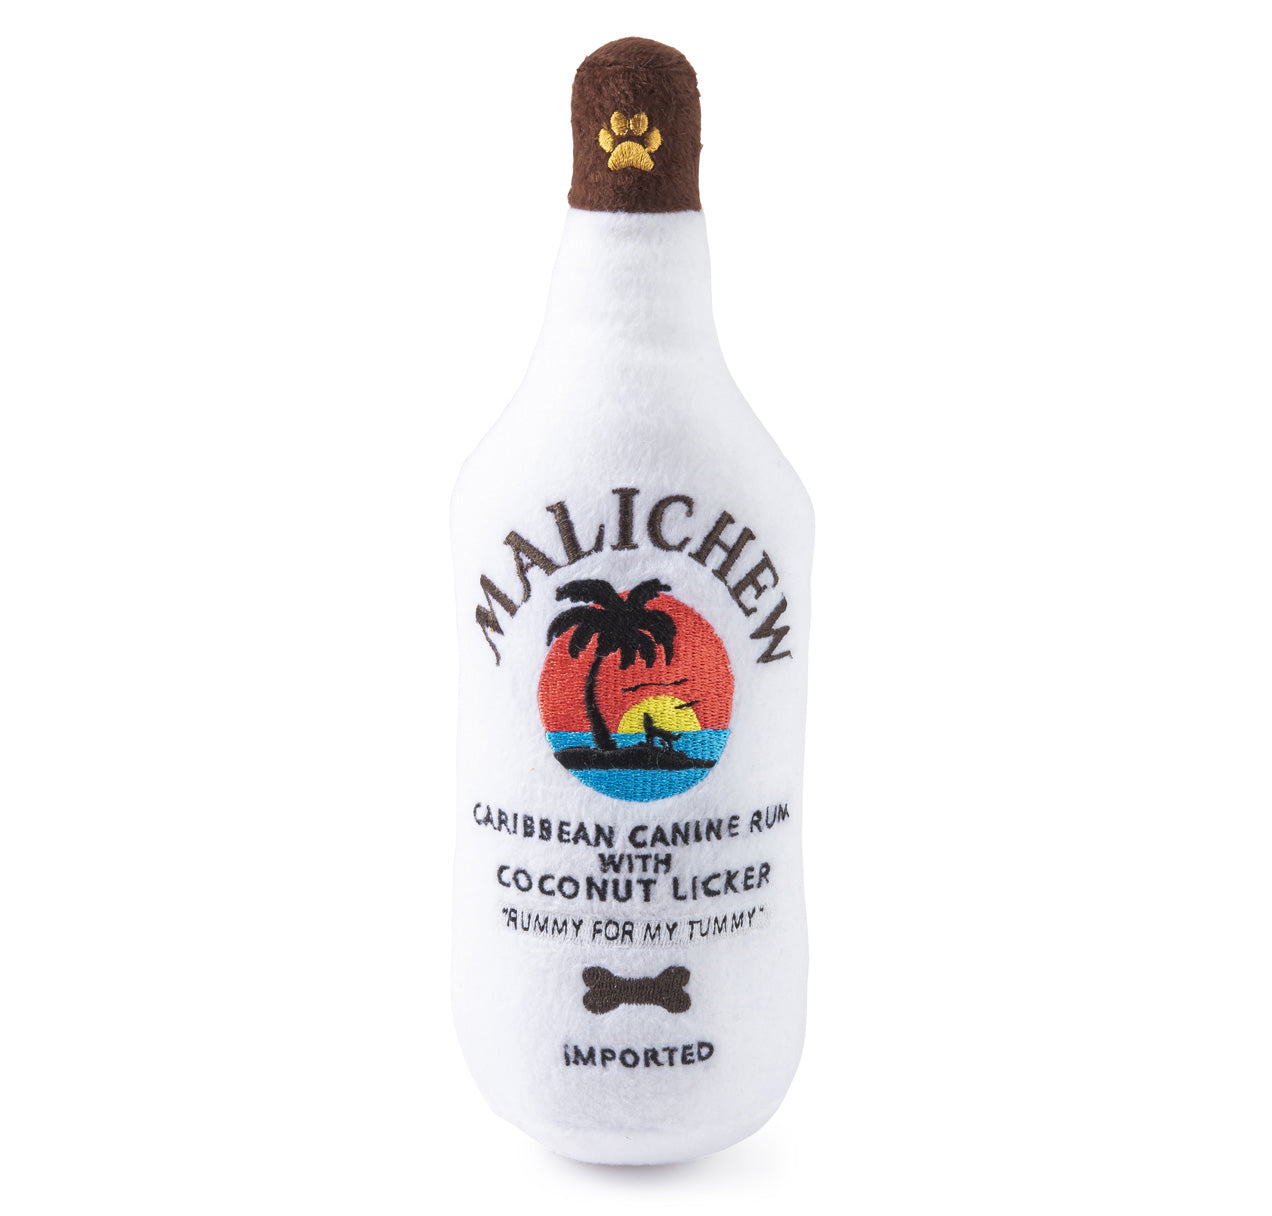 Malichew Rum